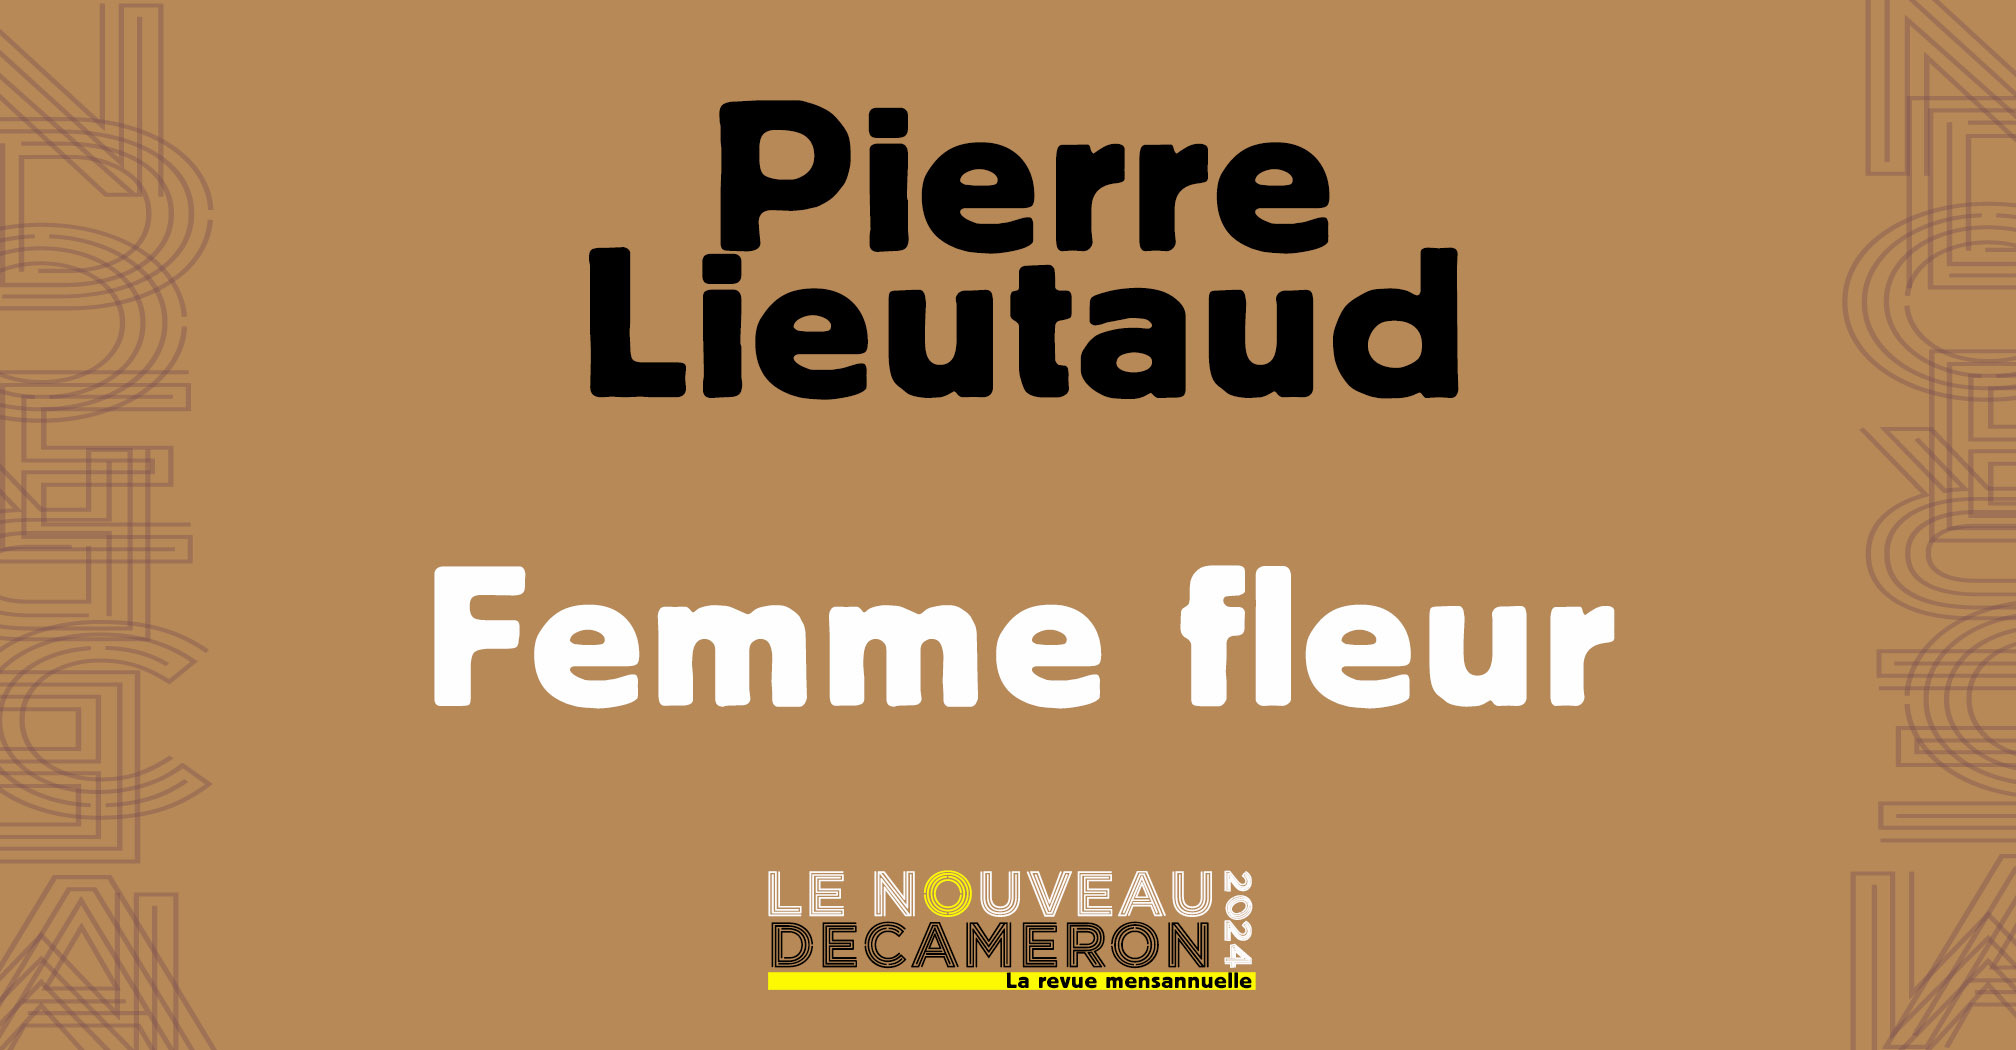 Pierre Lieutaud - Trad. F.Beretti - Femme fleur